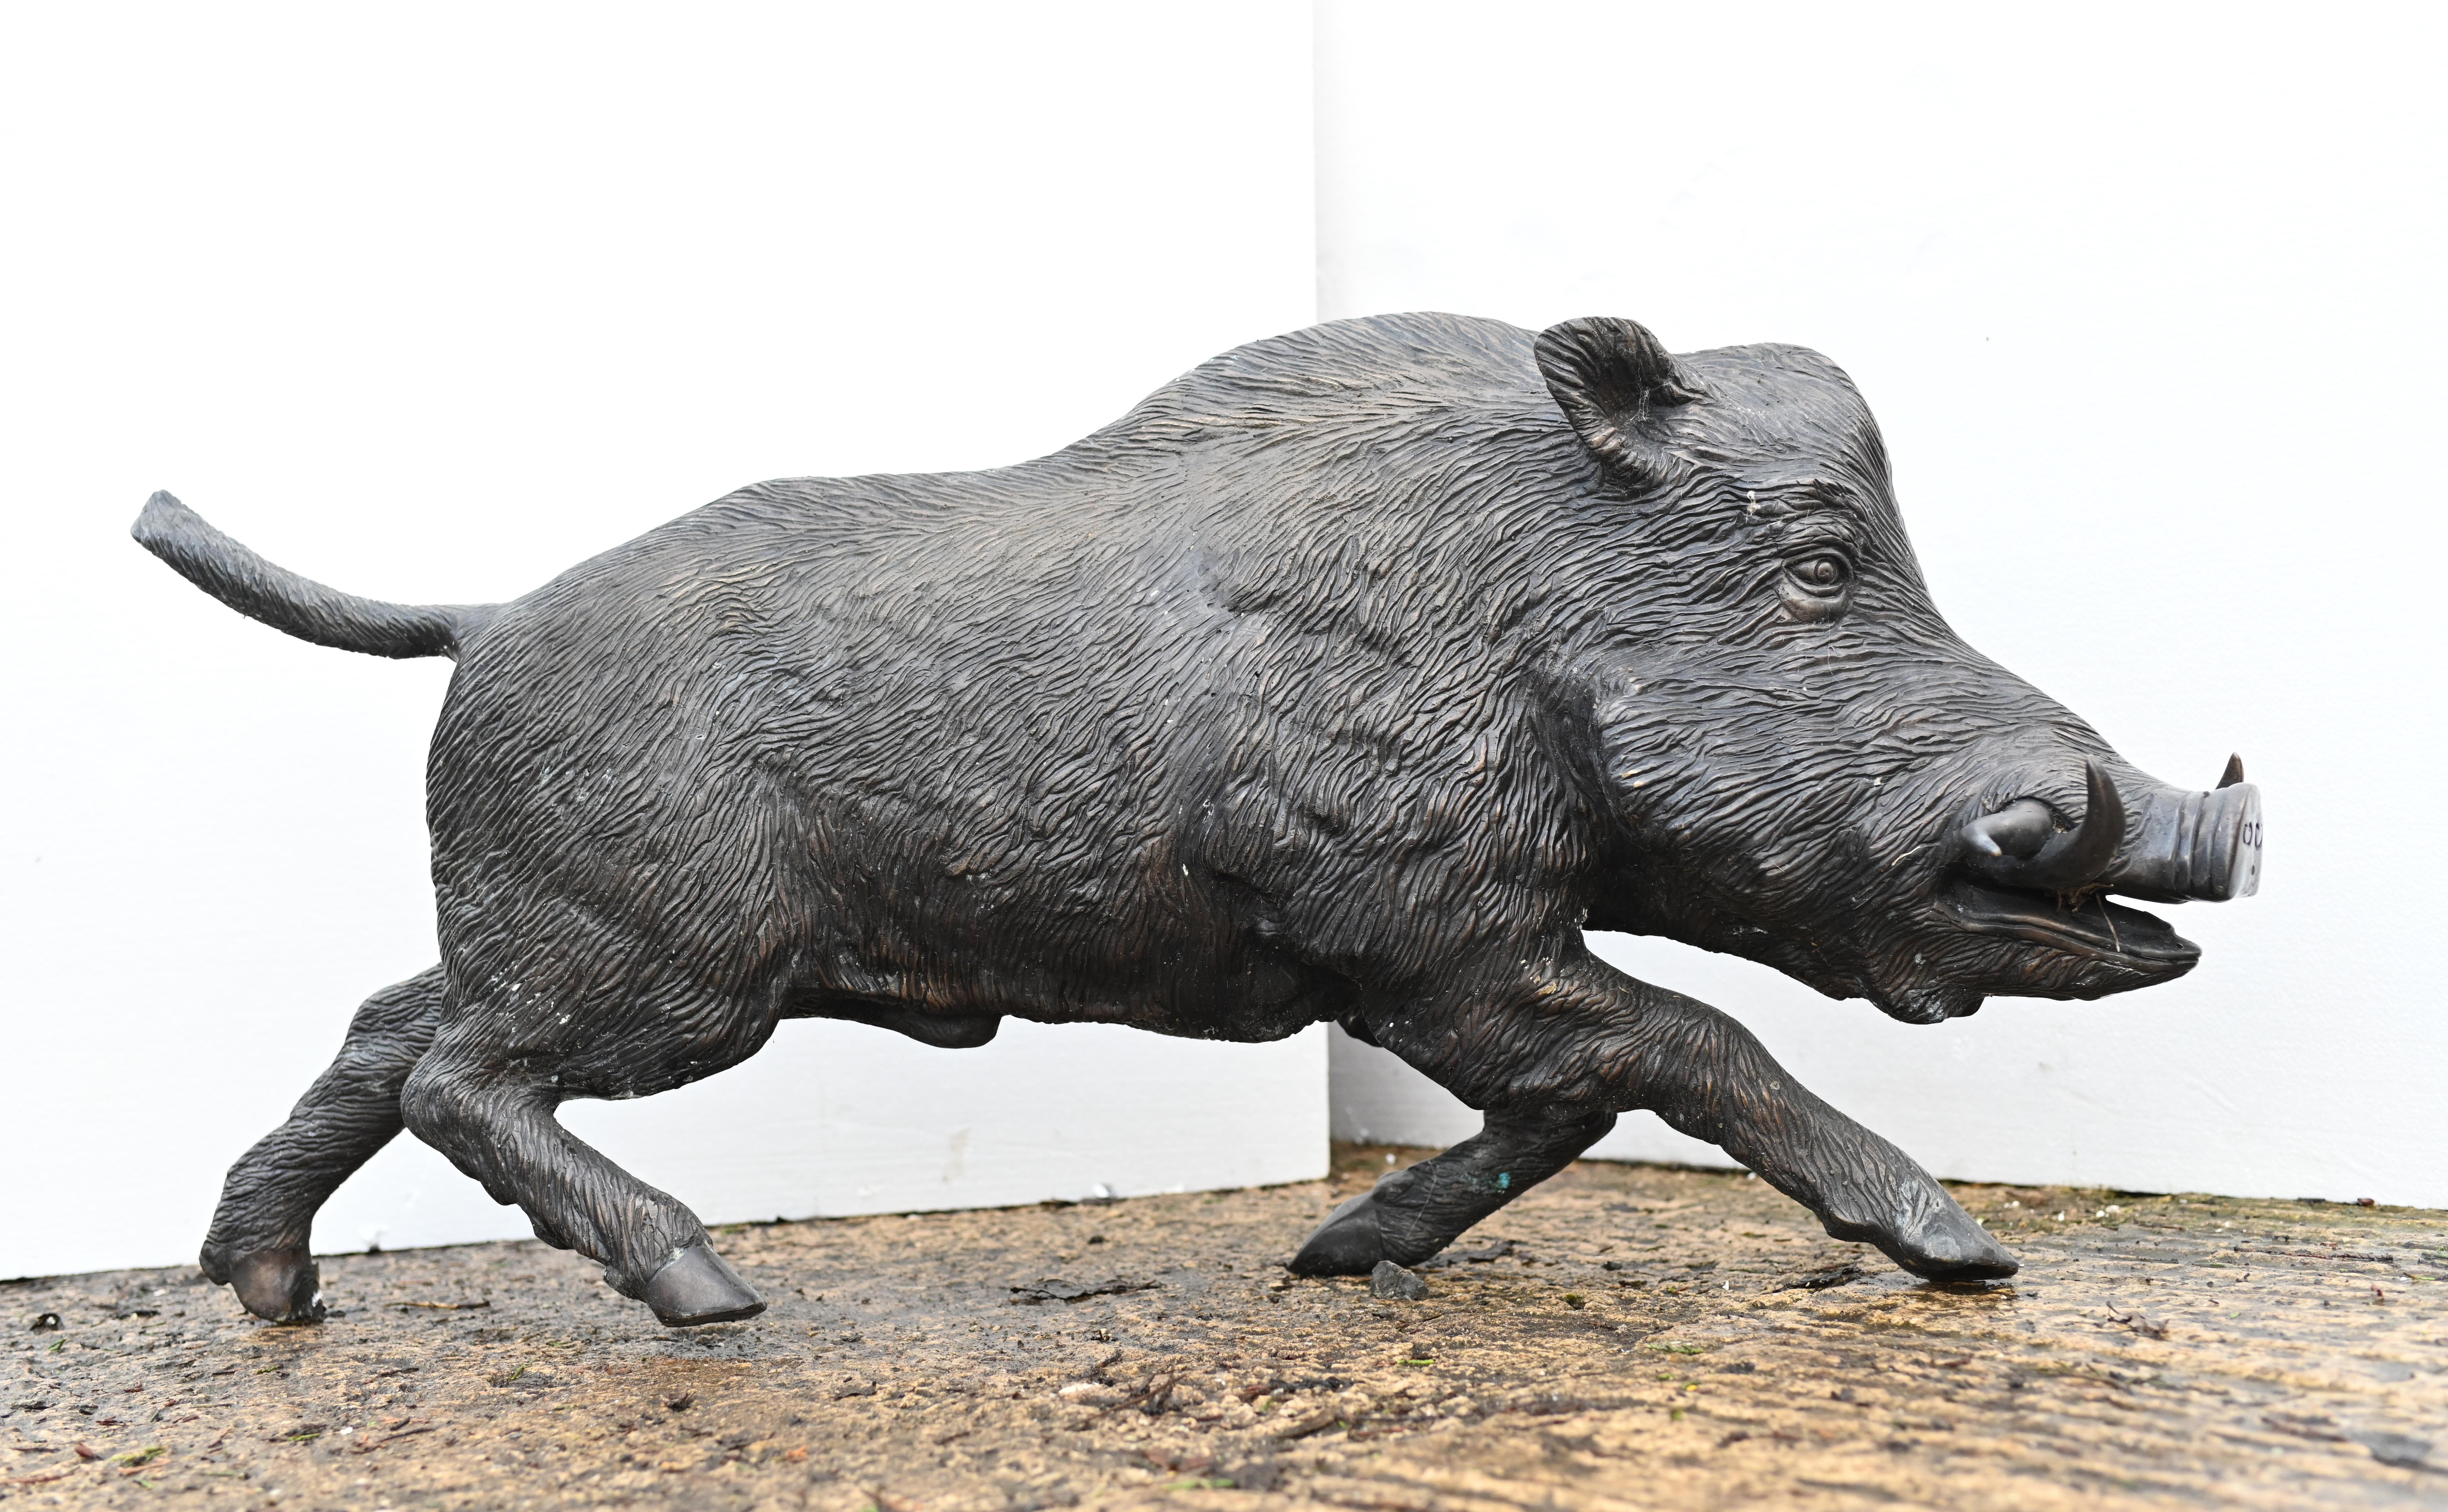 Superbe moulage en bronze d'un porc ou d'un sanglier grandeur nature
Mesure près d'un mètre de long - 101 CM
-Le sanglier était révéré par de nombreuses cultures, en particulier par les Celtes, pour ses qualités de guerrier intrépide.
La patine de